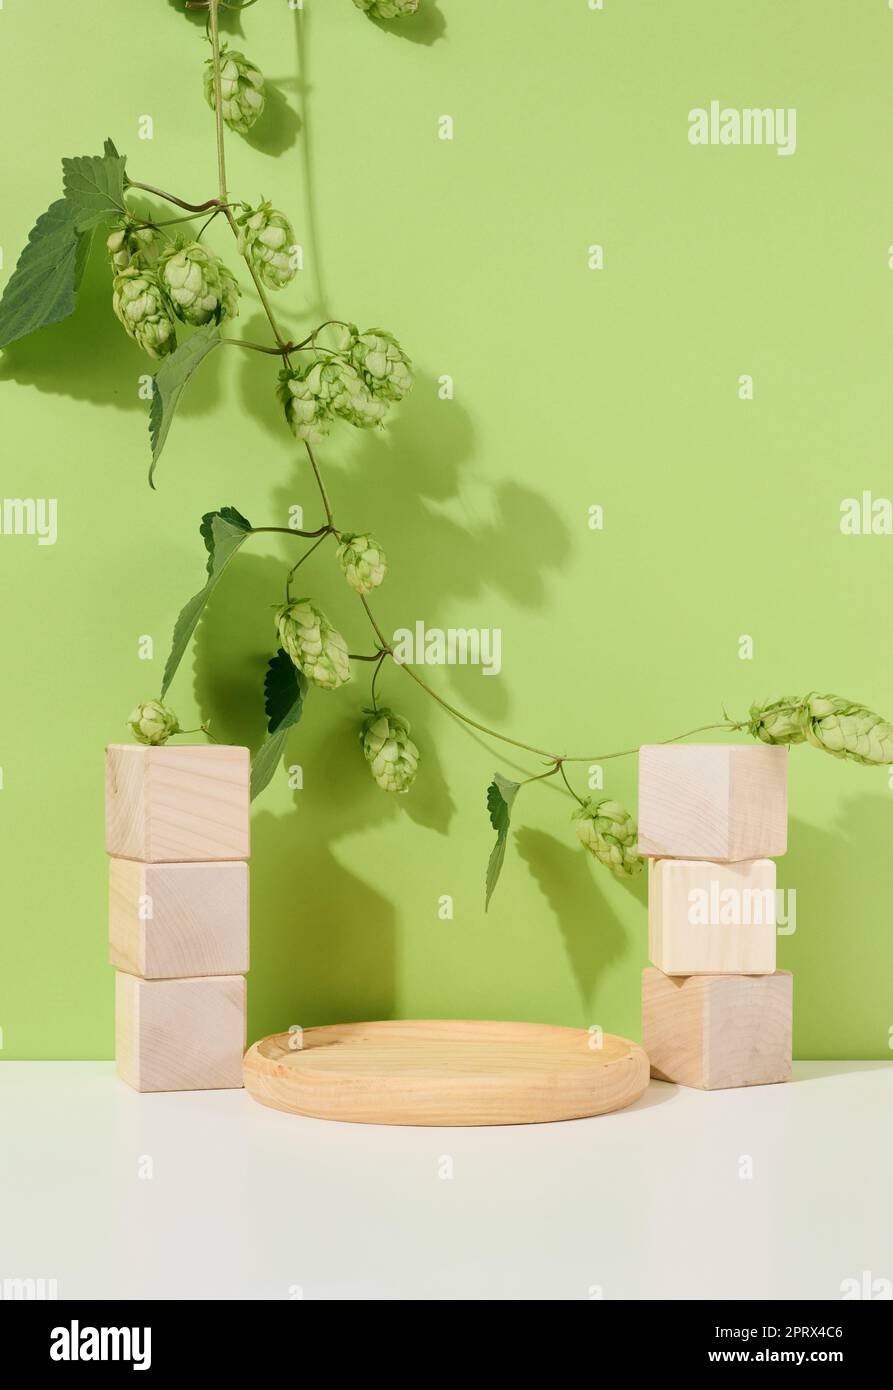 Podio vacío de madera redonda y cubos de madera con ramas y hojas verdes sobre una mesa blanca. Foto de stock